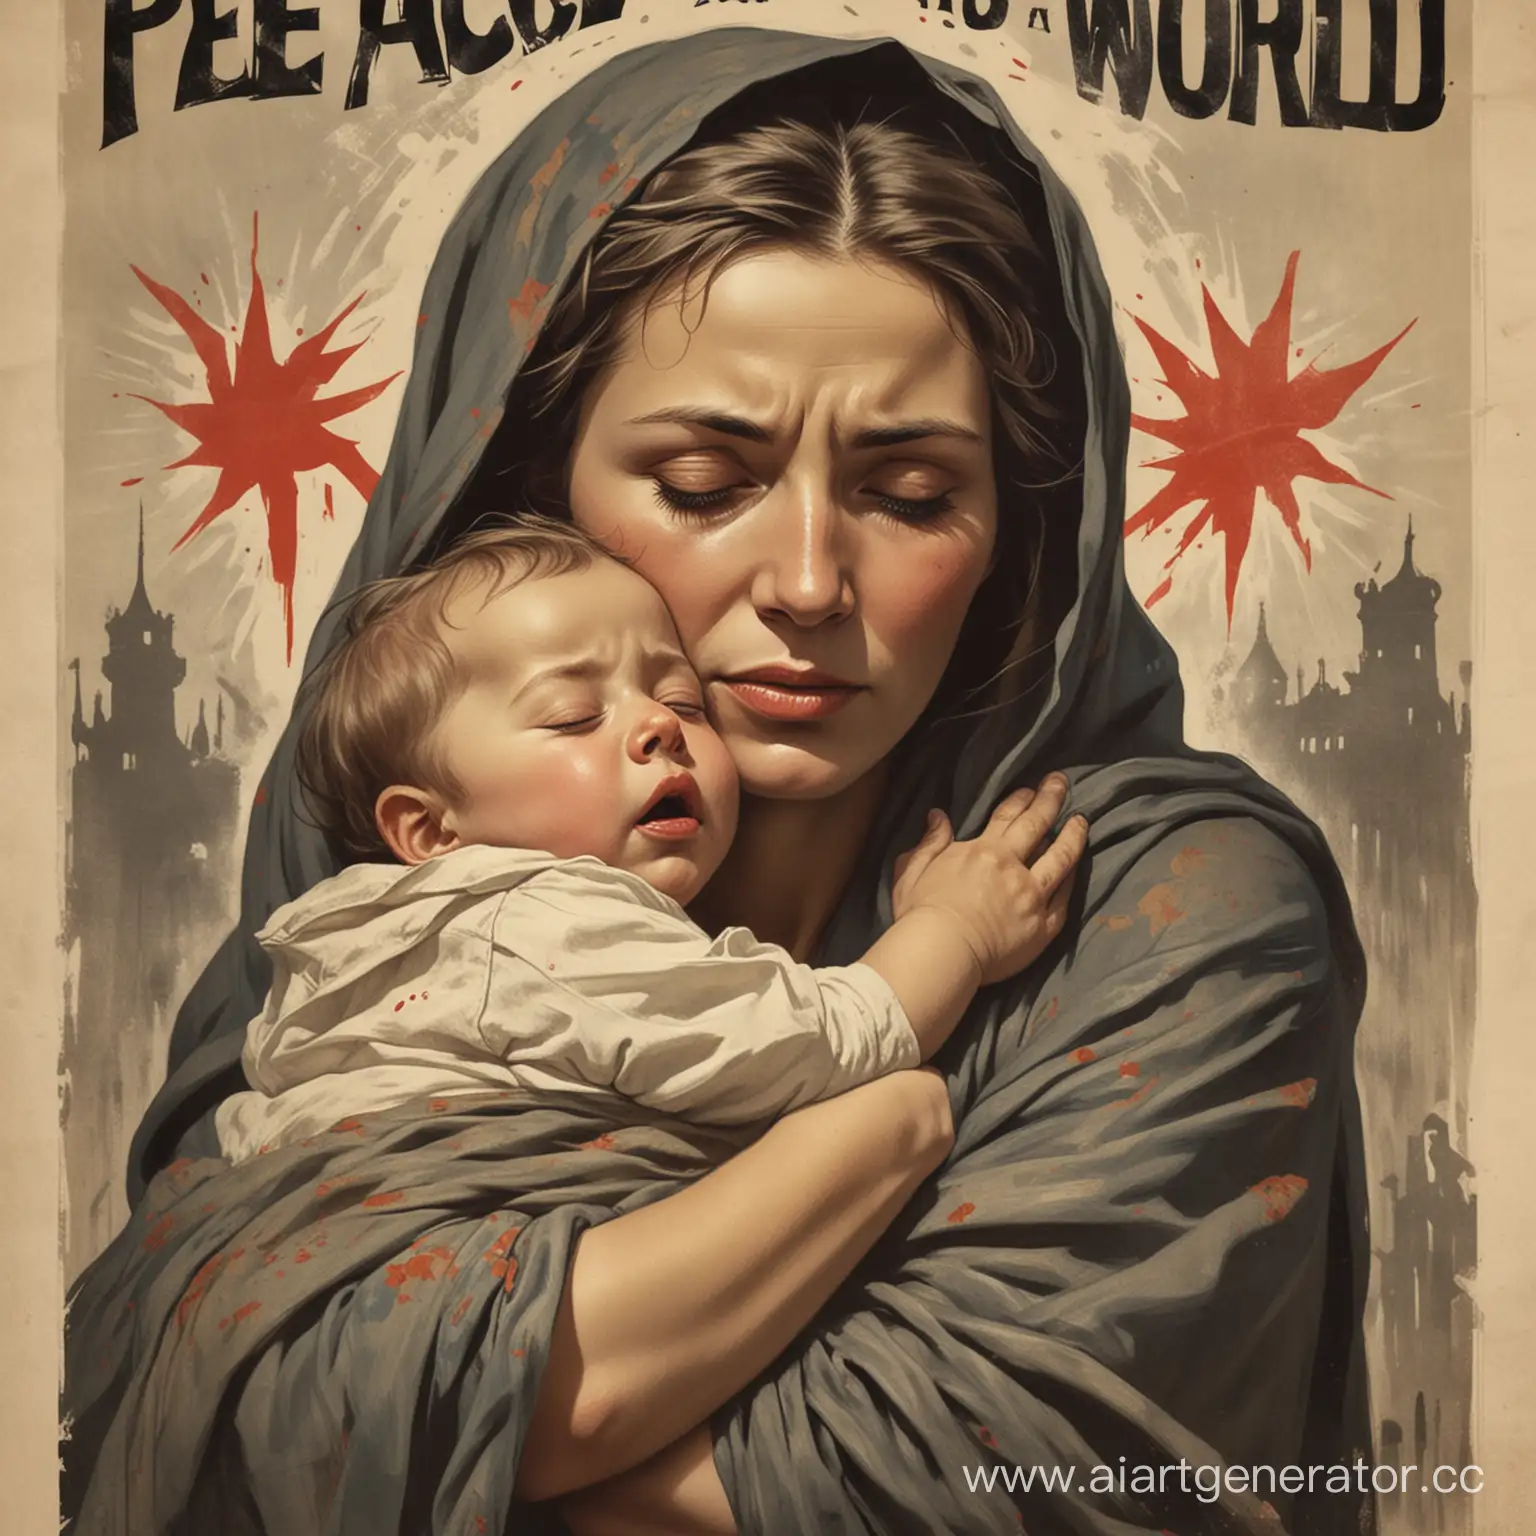 Плакат с лозунгом "Миру мир" в стиле плакатов Великой Отечественной войны с изображением плачущей женщины. держащей в руках ребенка, которая закрывает ему глаза, чтобы скрыть ужасы войны